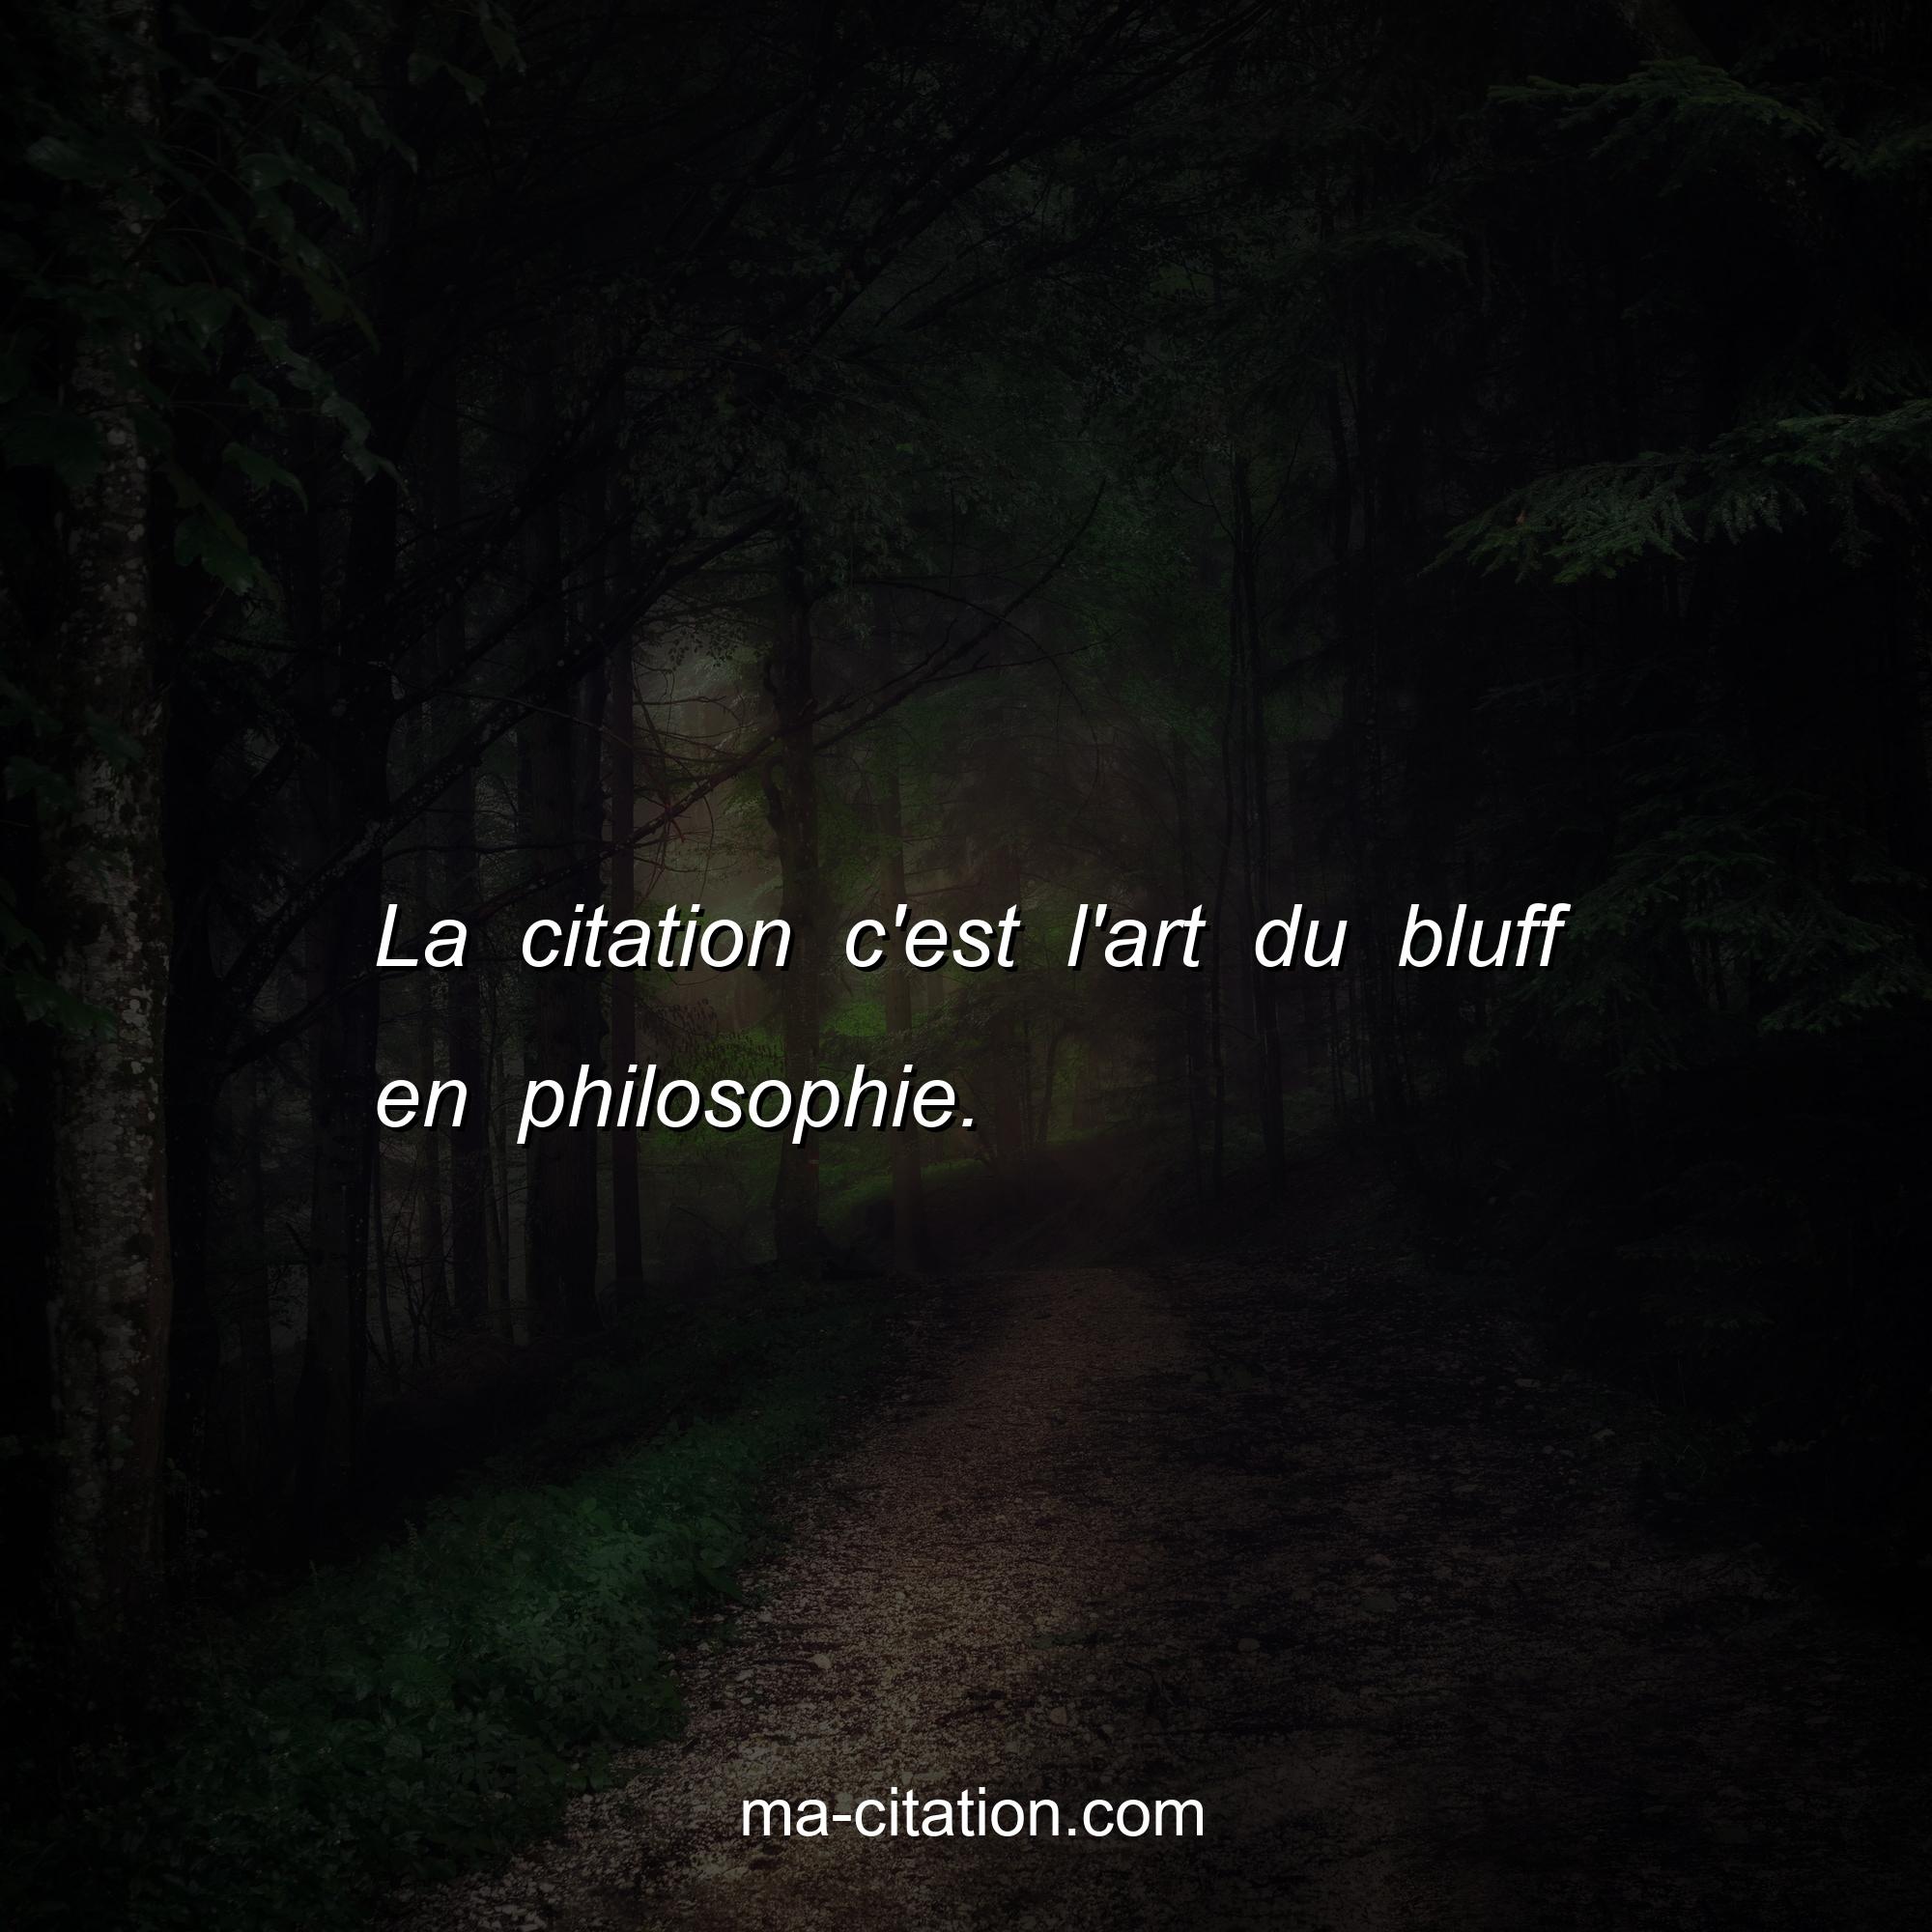 Ma-Citation.com : La citation c'est l'art du bluff en philosophie.